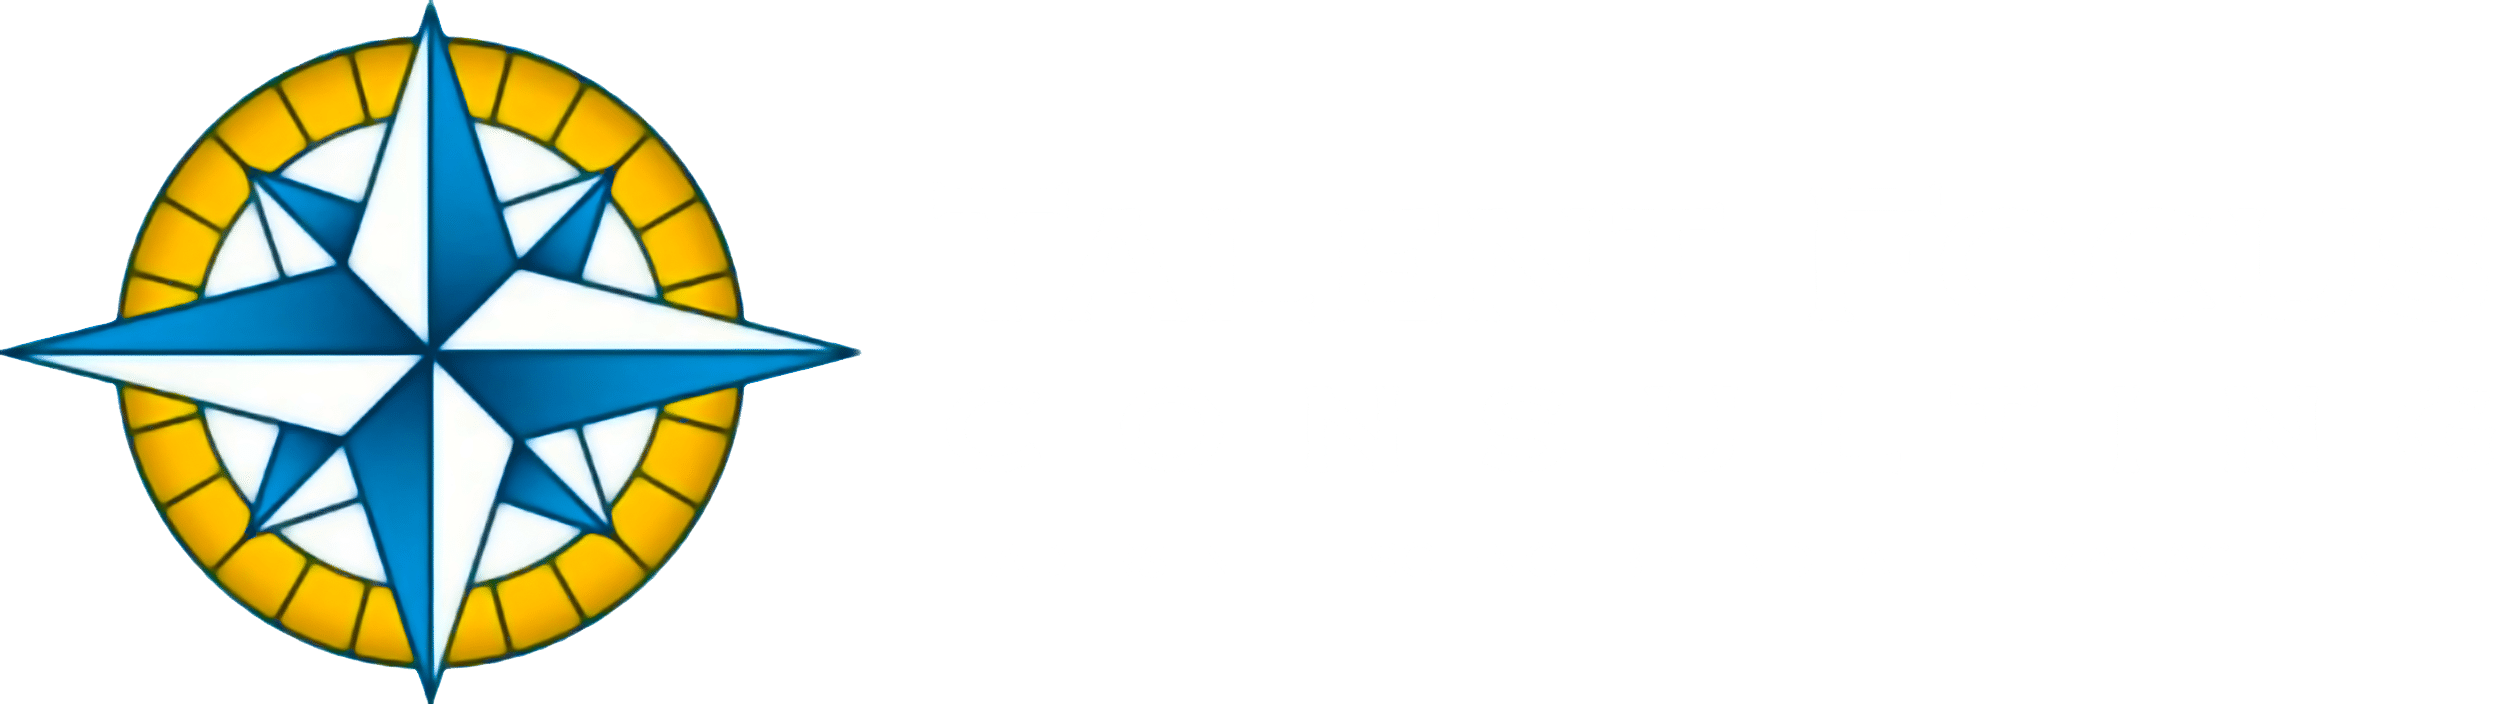 Talent Focus Consulting